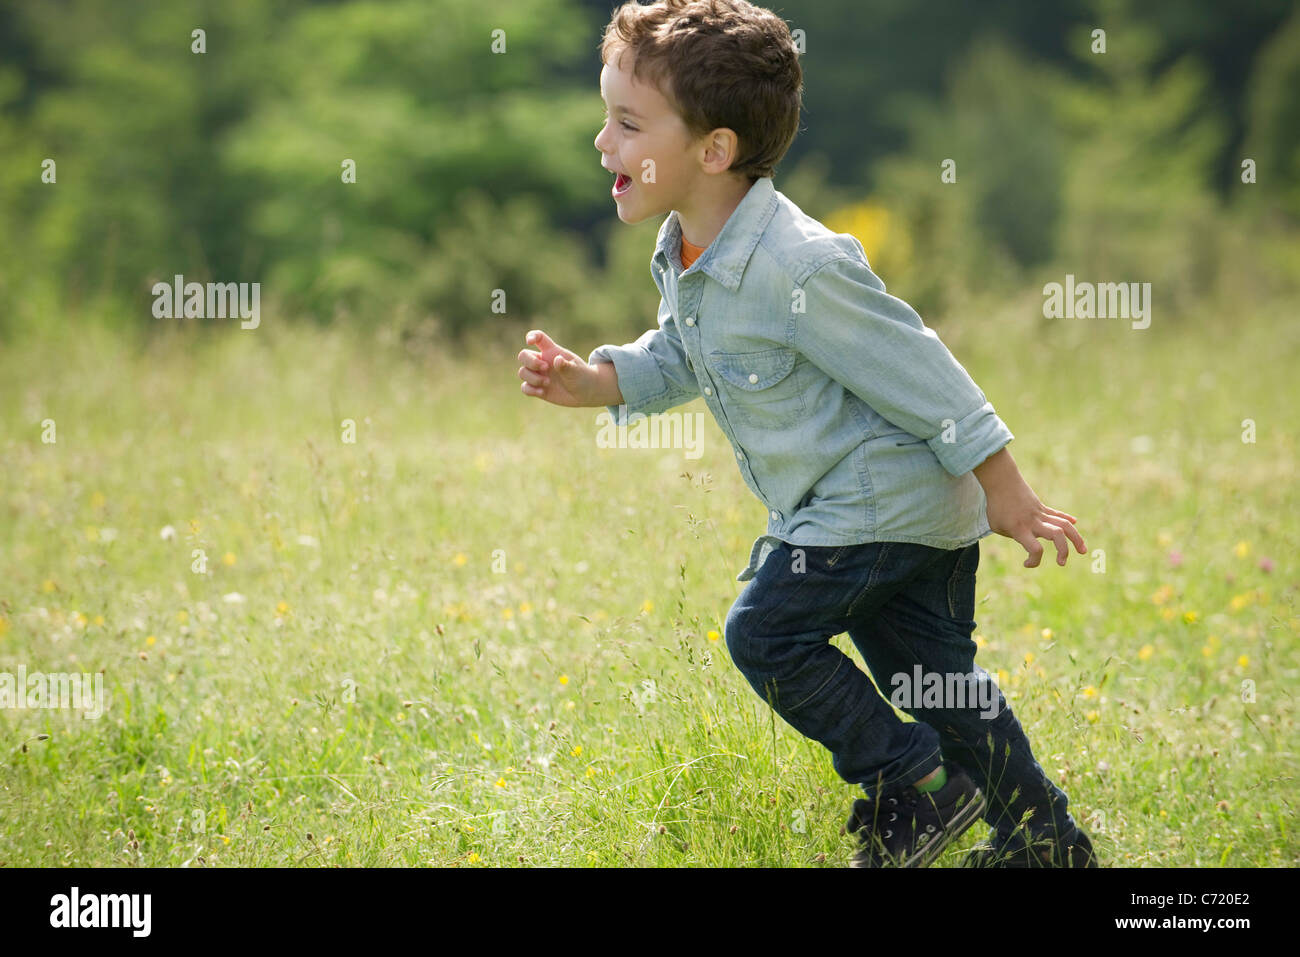 Little boy running in field Stock Photo